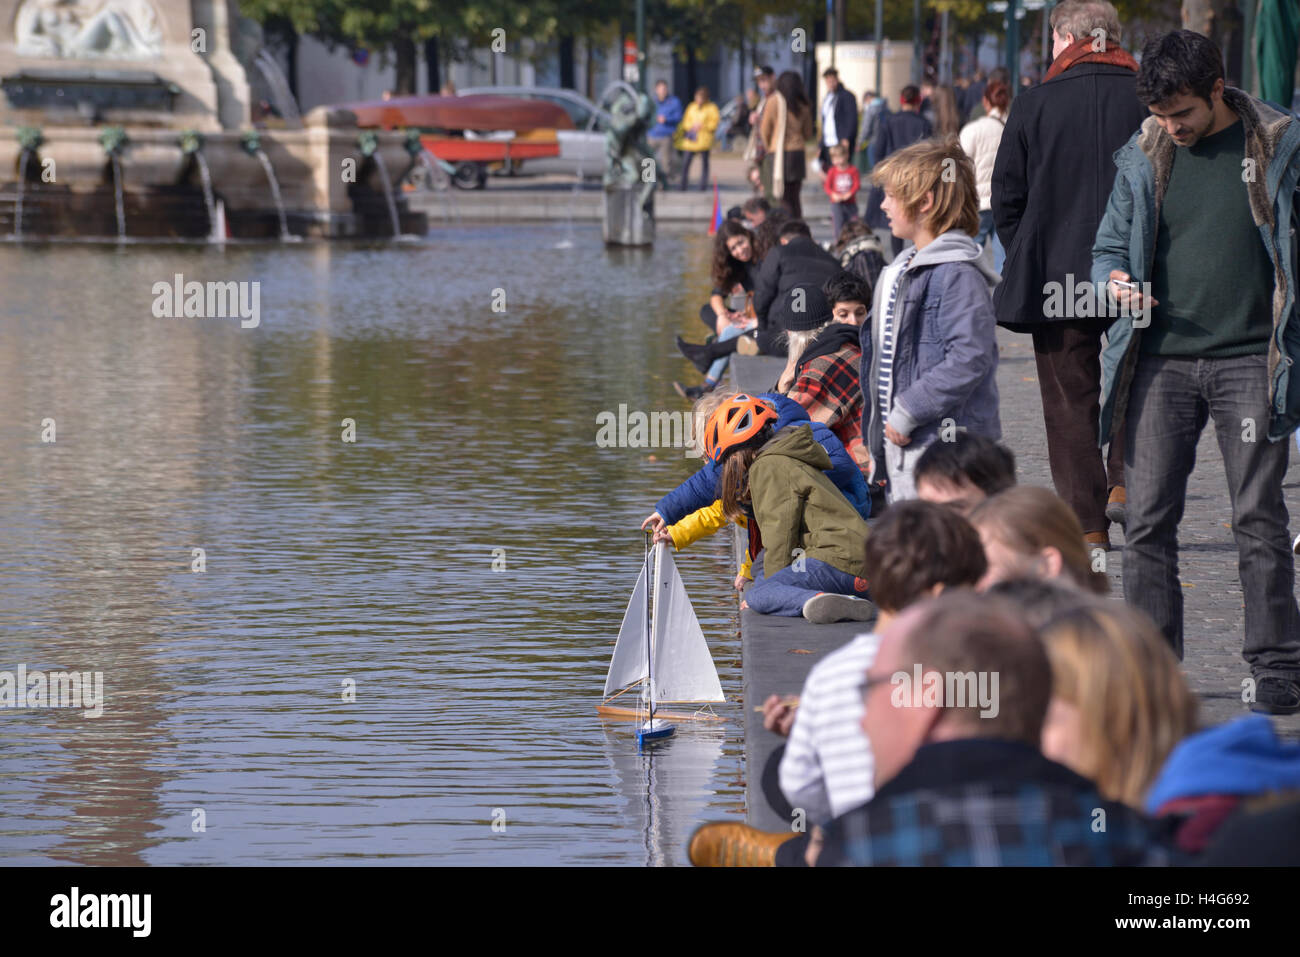 Bruxelles, Belgique. 15 octobre, 2016. Les gens jouent avec des modèles de bateaux à voile pendant l'événement de divertissement public en secteur Saint Vismet Cath Sur Mer le 15 octobre 2016 à Bruxelles, Belgique : Crédit Skyfish/Alamy Live News Banque D'Images